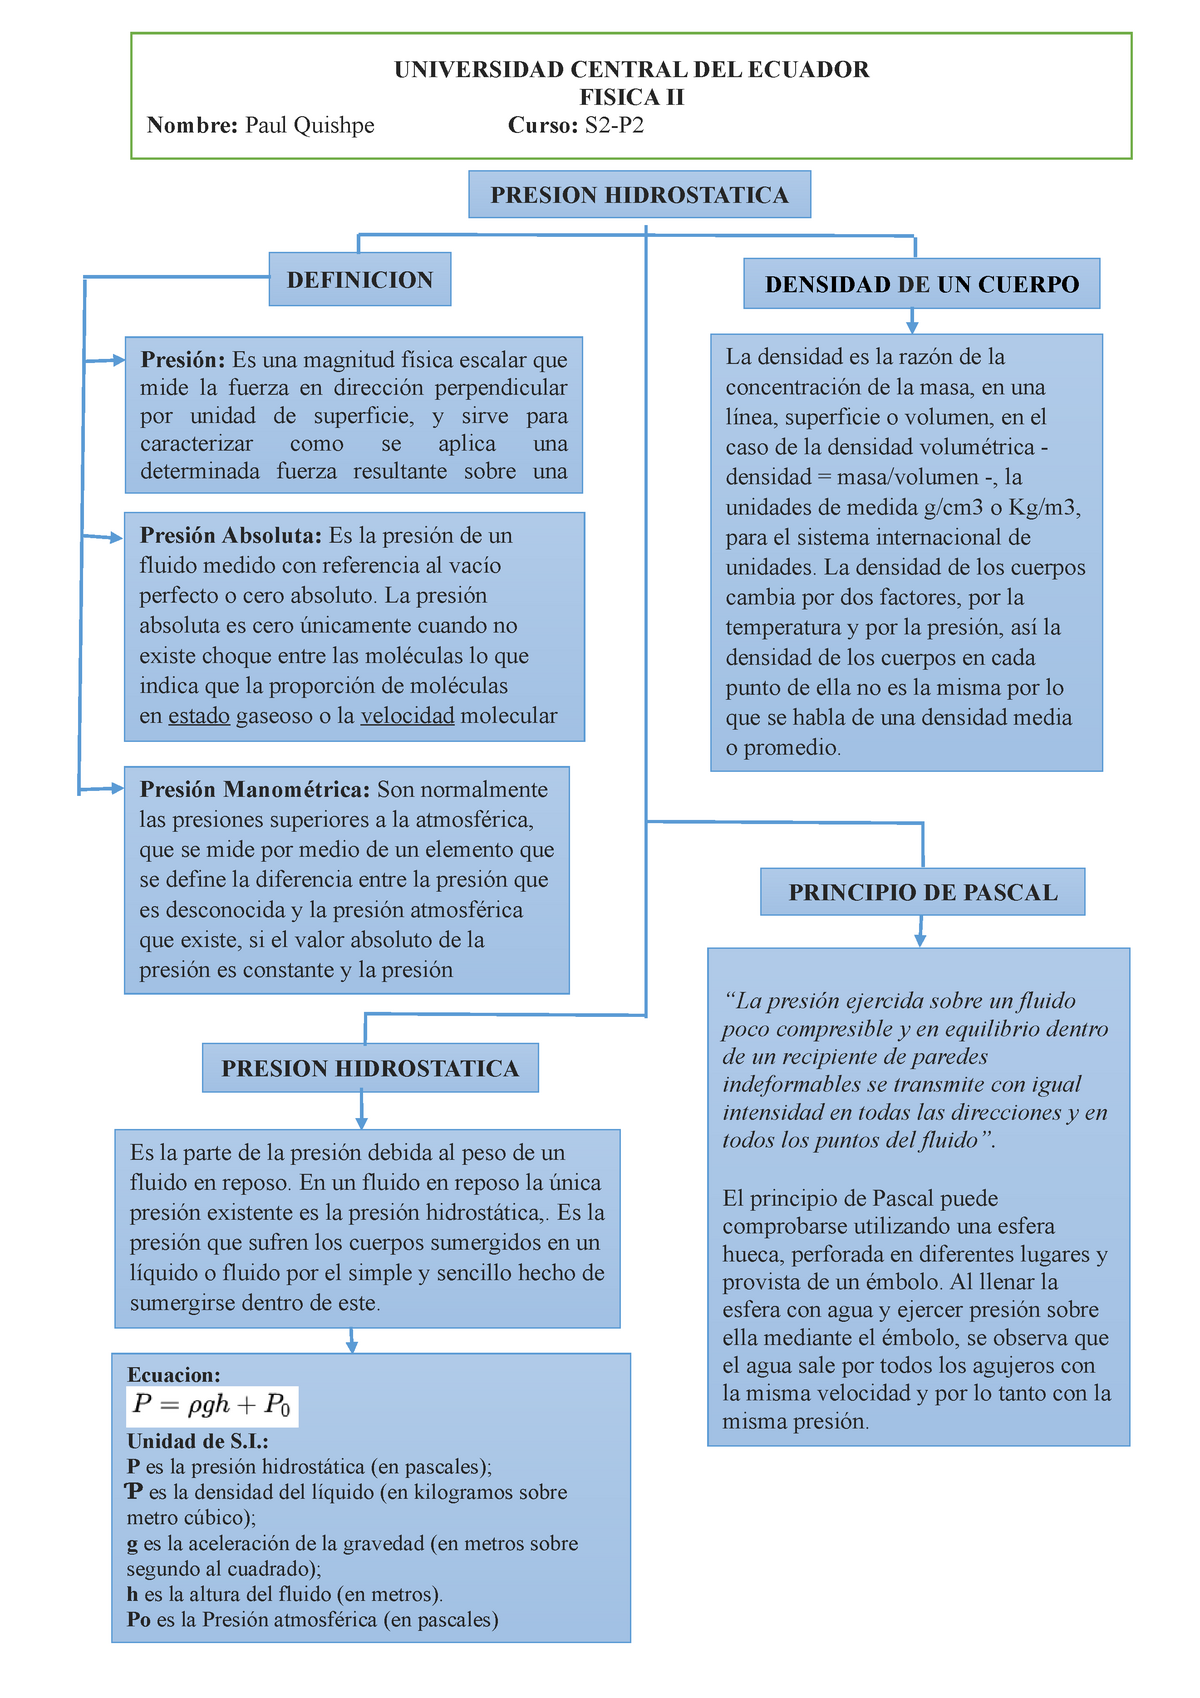 Fundamento de Presion Hidrostatica - PRESION HIDROSTATICA UNIVERSIDAD  CENTRAL DEL ECUADOR FISICA II - Studocu